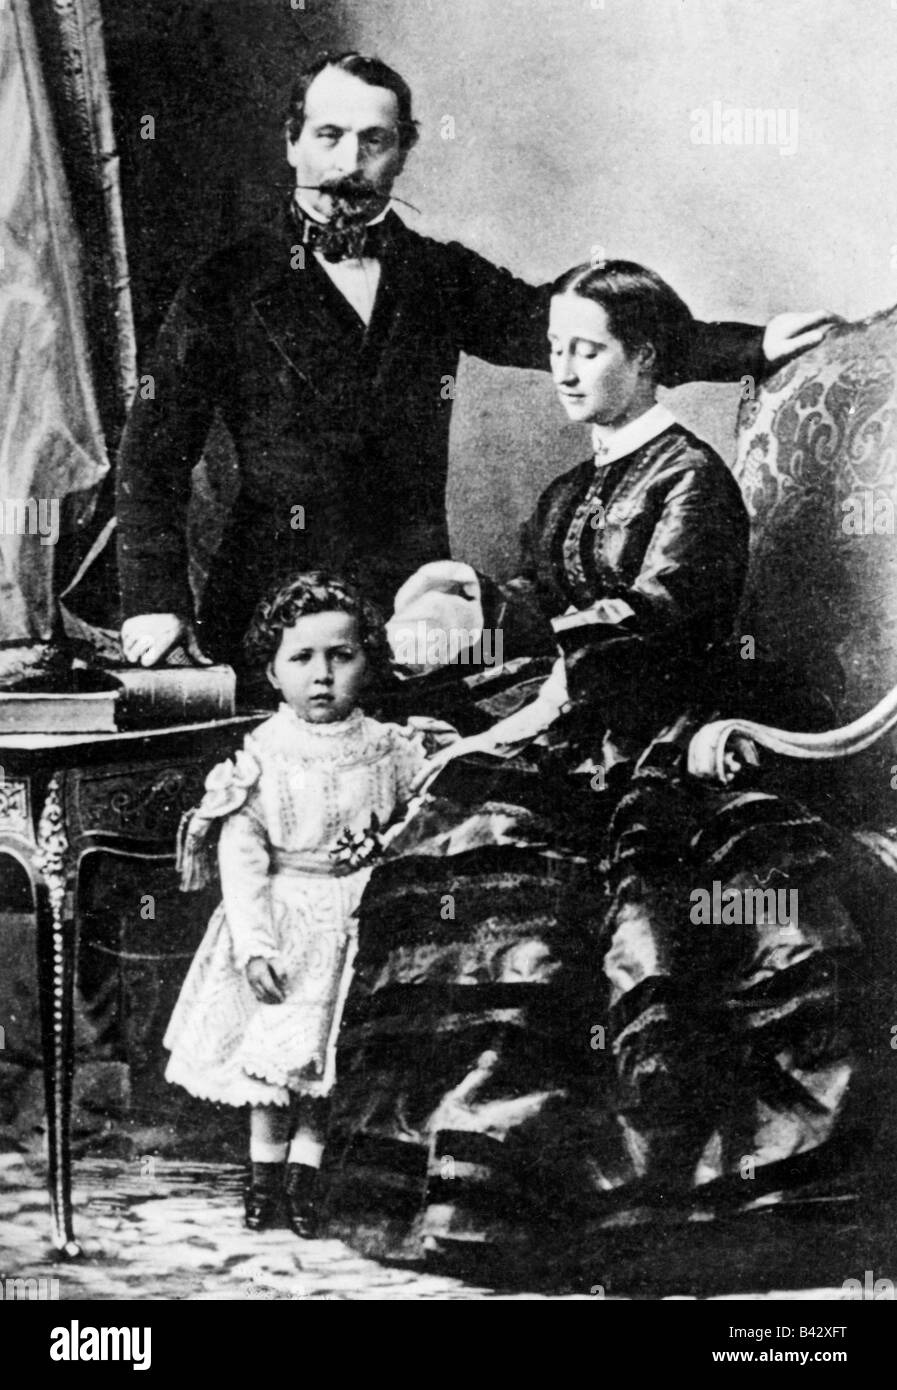 Napoléon III, 20.4.1808 - 9.1.1873, Empereur des Français 2.12.1852 - 2.9.1870, avec femme Empress Eugénie et fils le prince Napoléon Eugene Louis, vers 1860, Banque D'Images